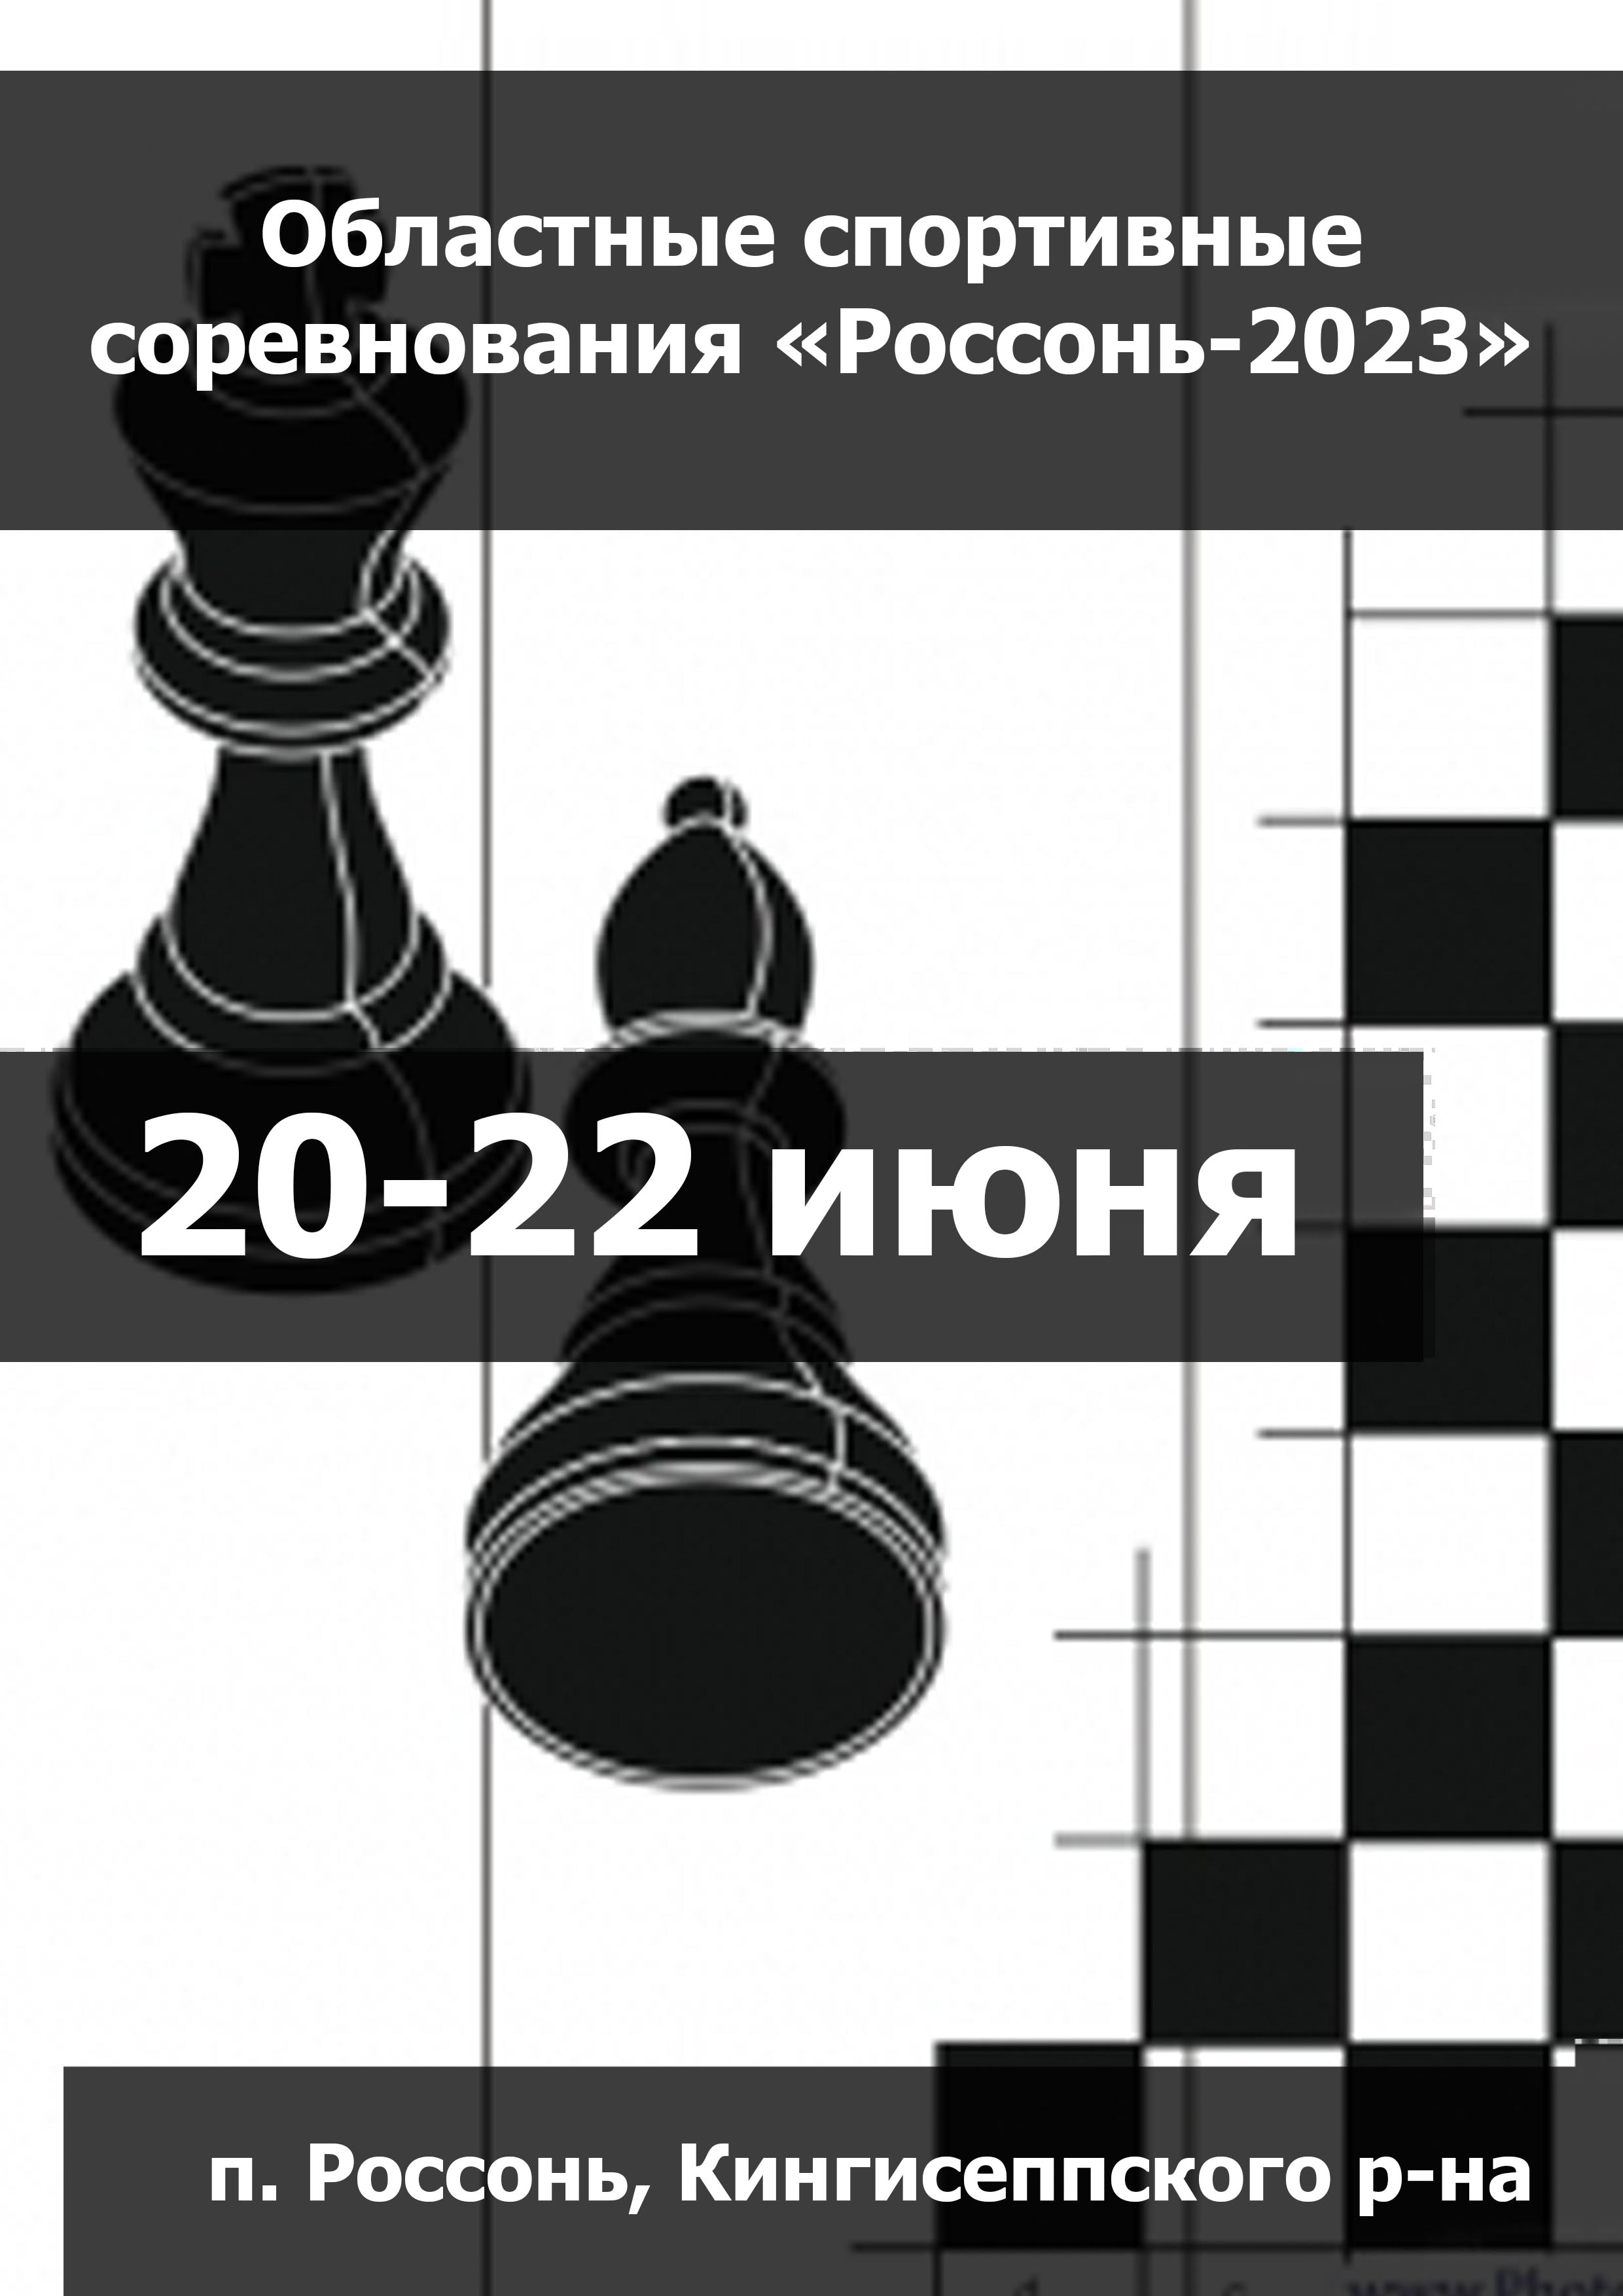 Областные спортивные соревнования «Россонь-2023» 20  Bulan juni
 2023  tahun
 